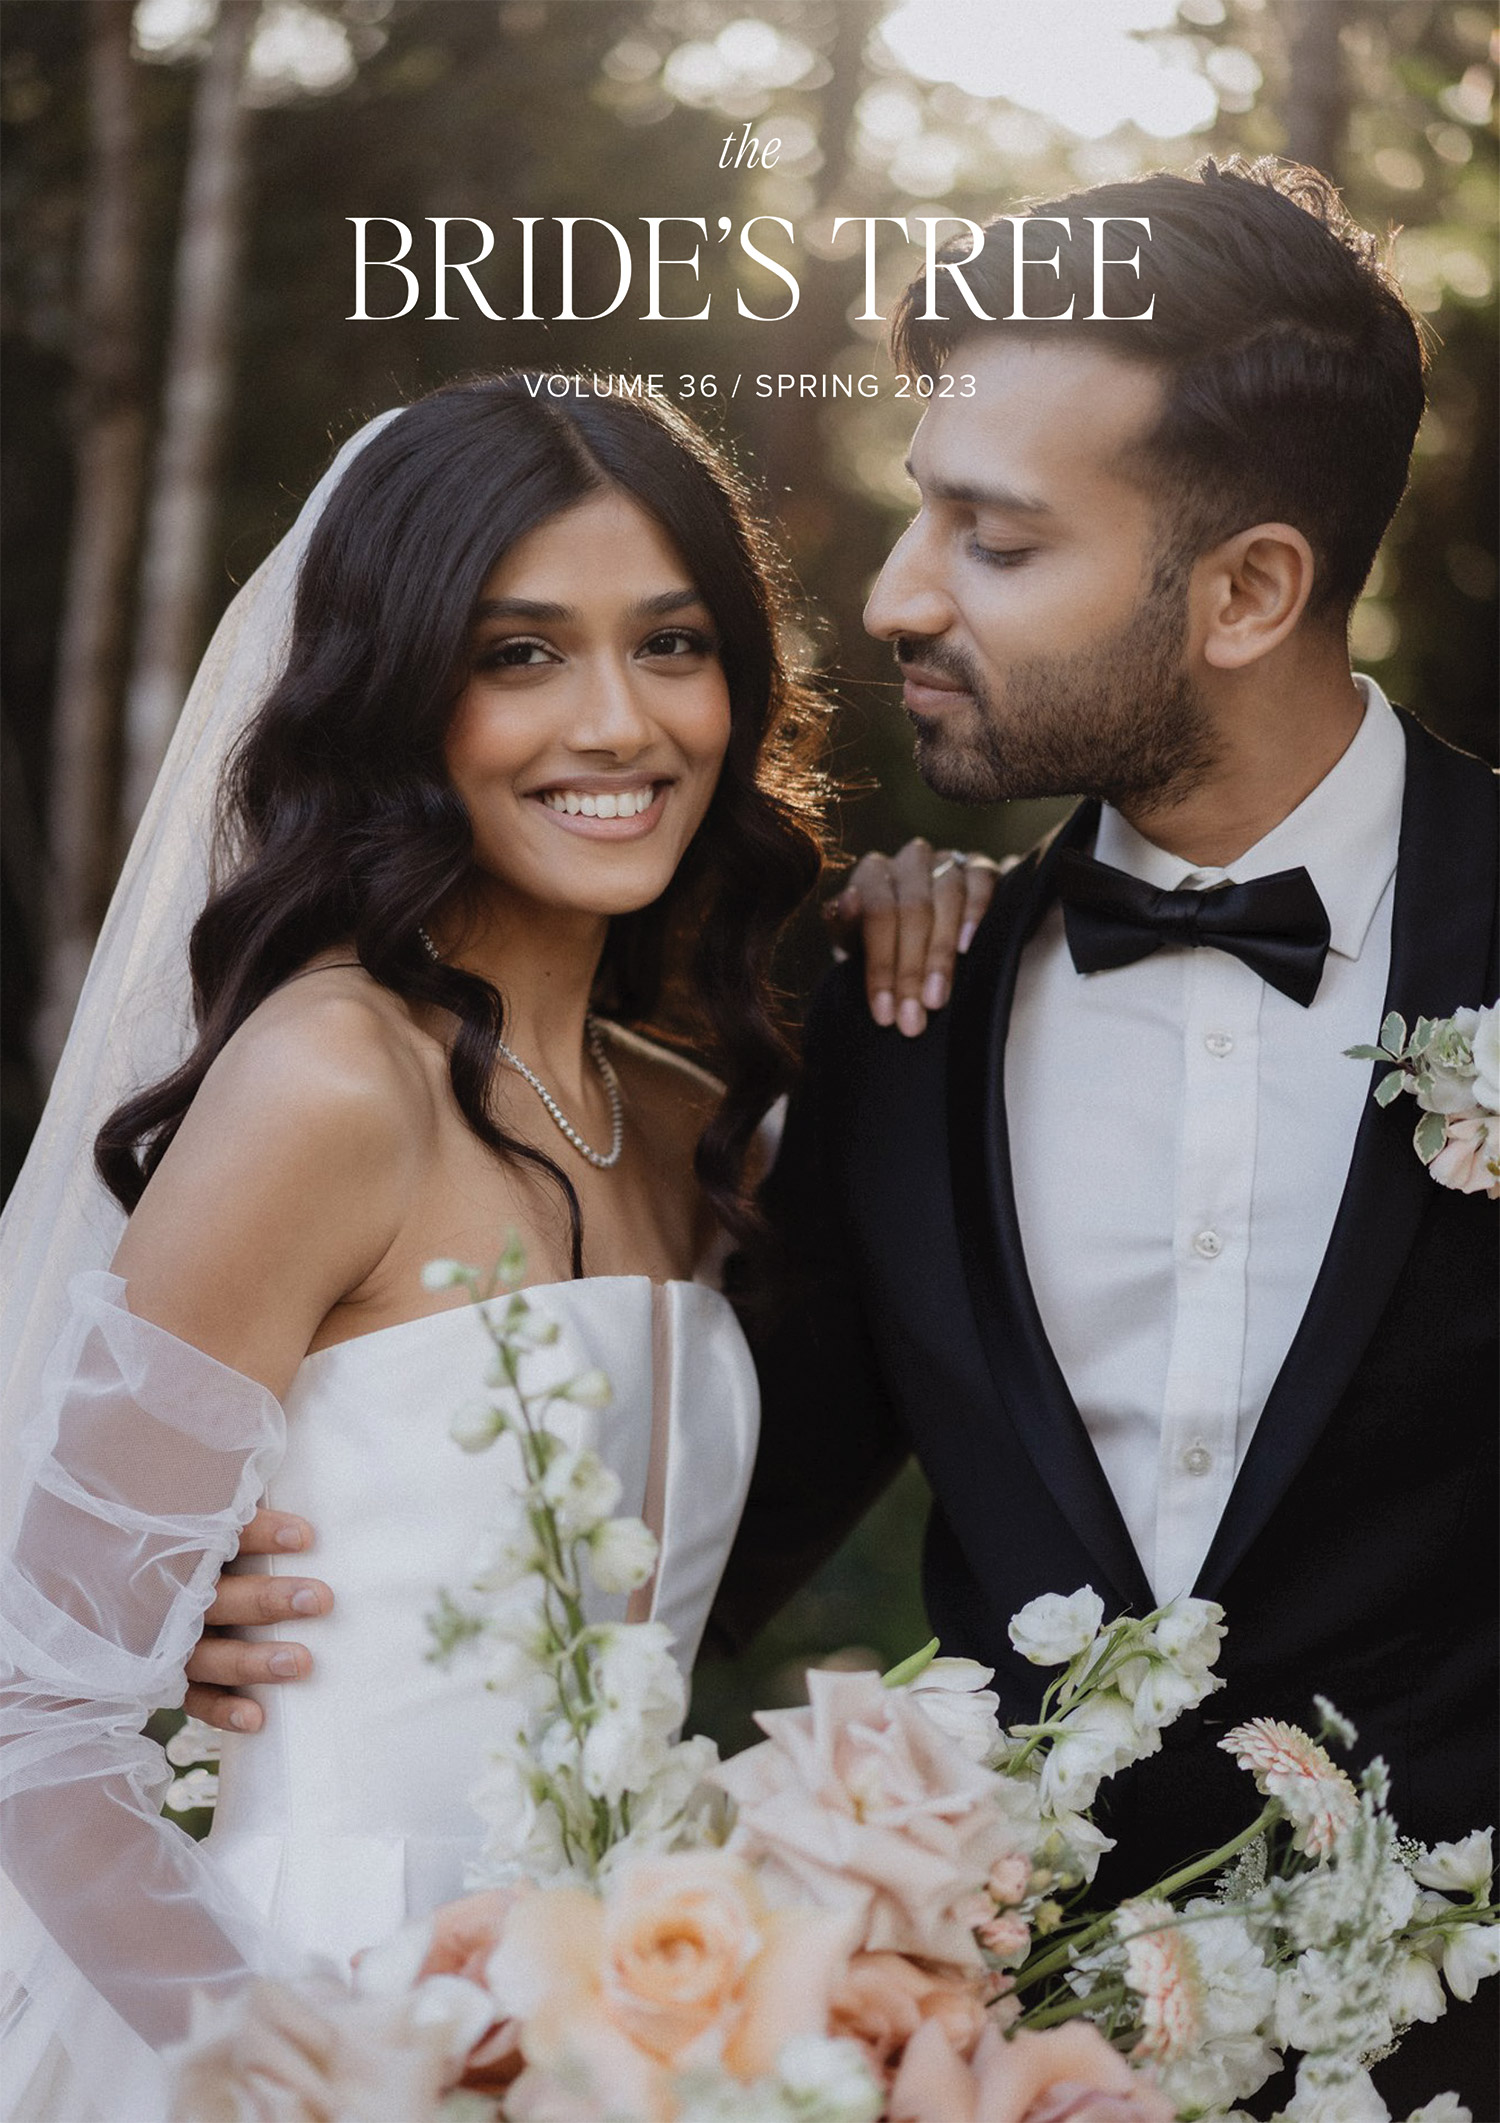 The Bride's Tree magazine cover